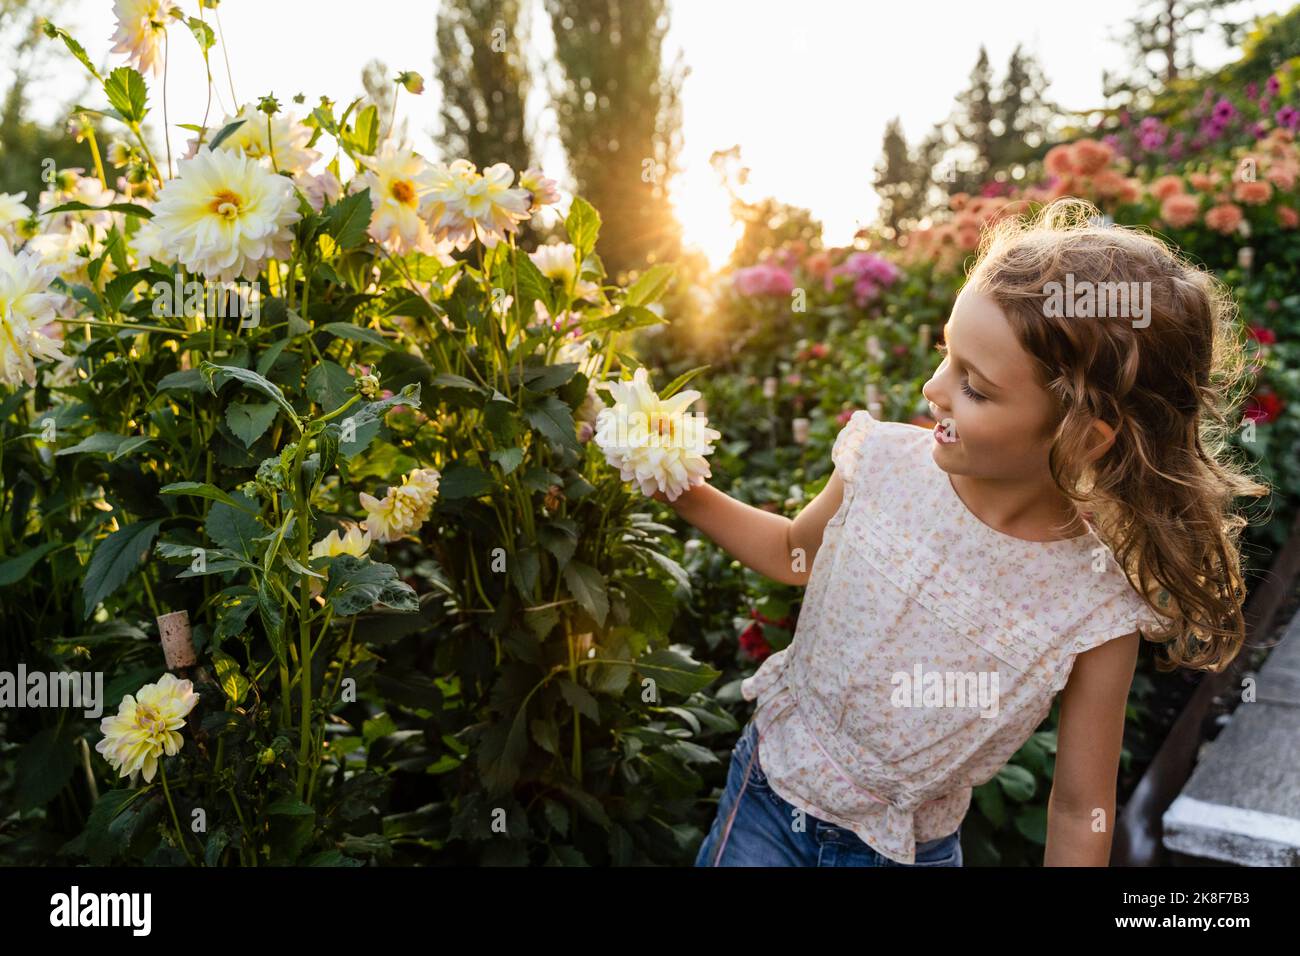 Little girl smelling flowers in garden Stock Photo